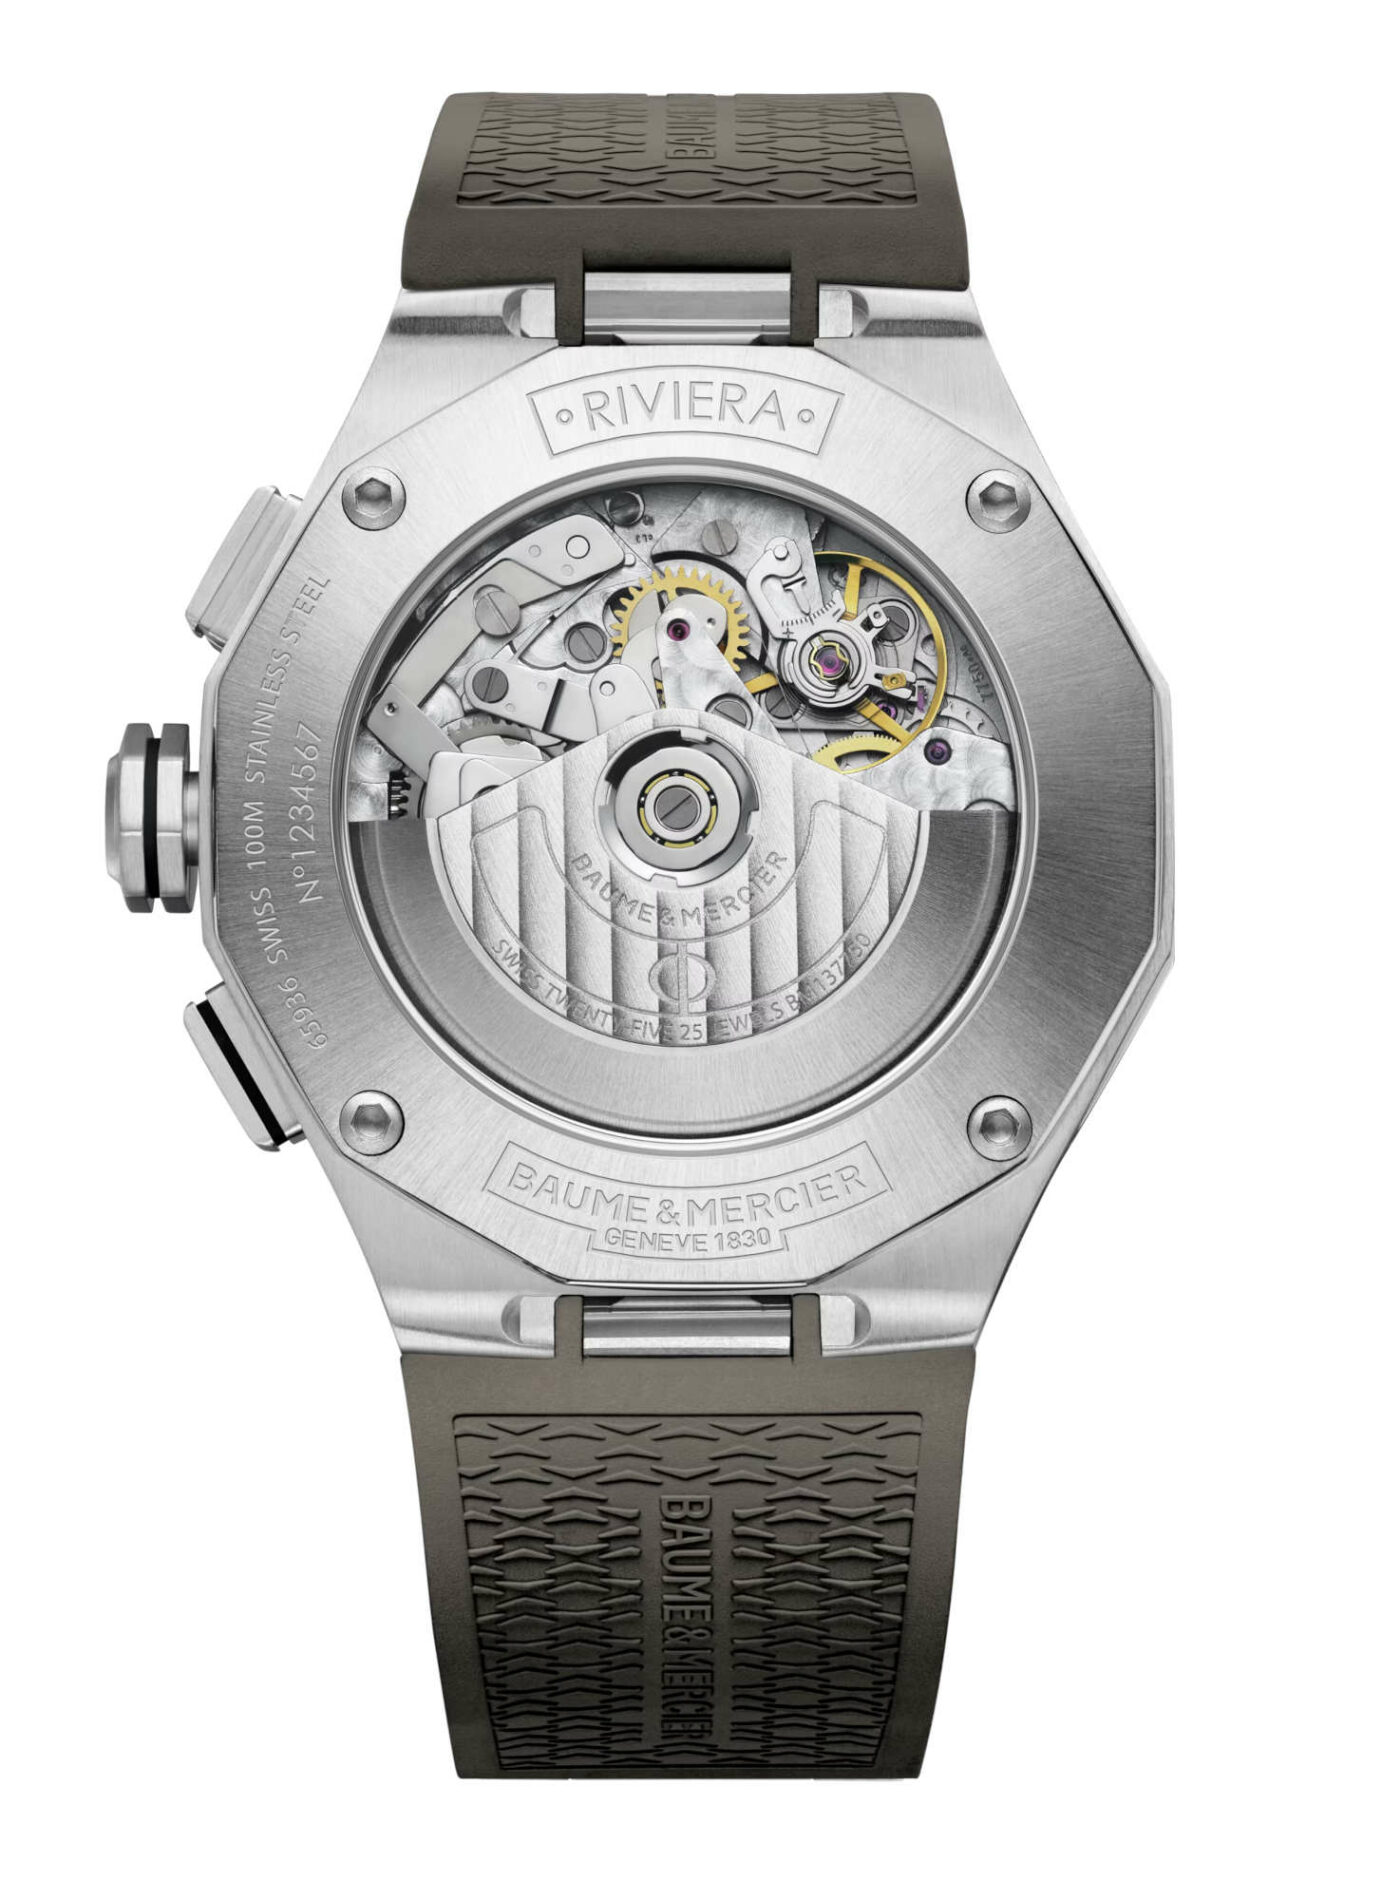 Baume et Mercier Riviera M0A10722 - Gioielleria Casavola di Noci - cronografo automatico svizzero da uomo con calibro Valjoux 7750